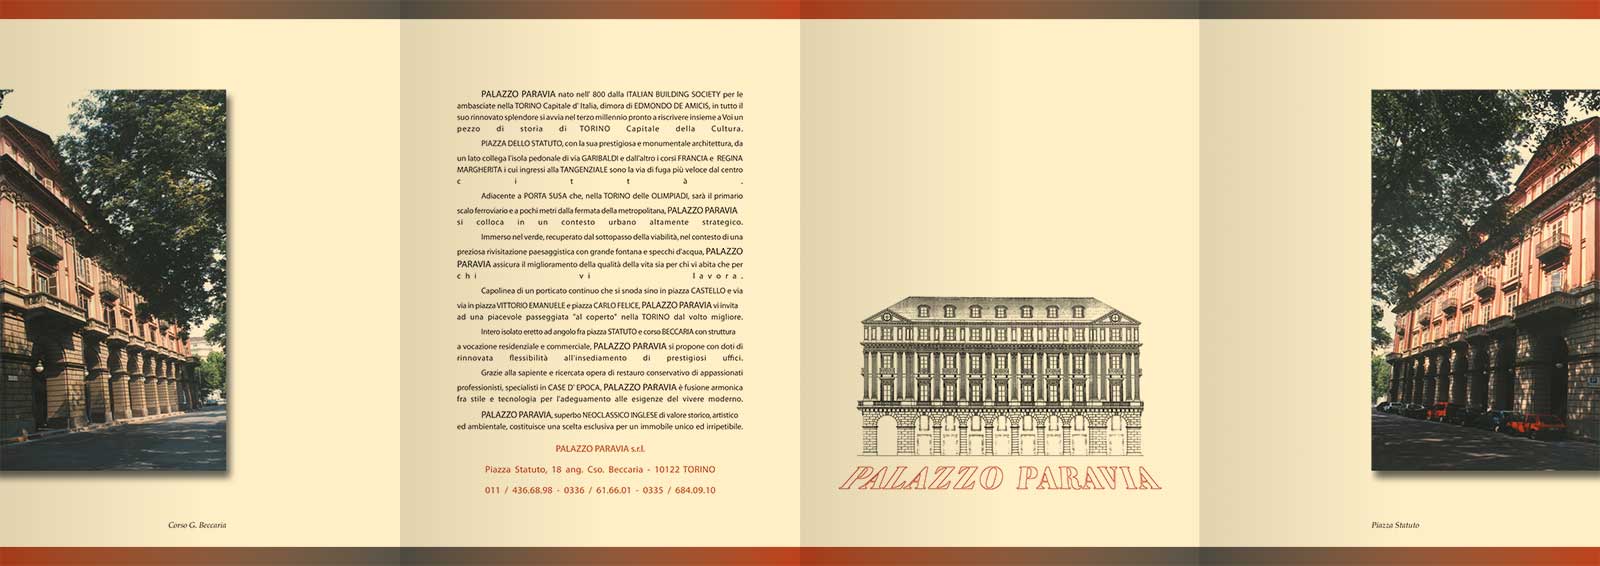 Grafica e illustrazione per depliant Palazzo Paravia Torino, esterno